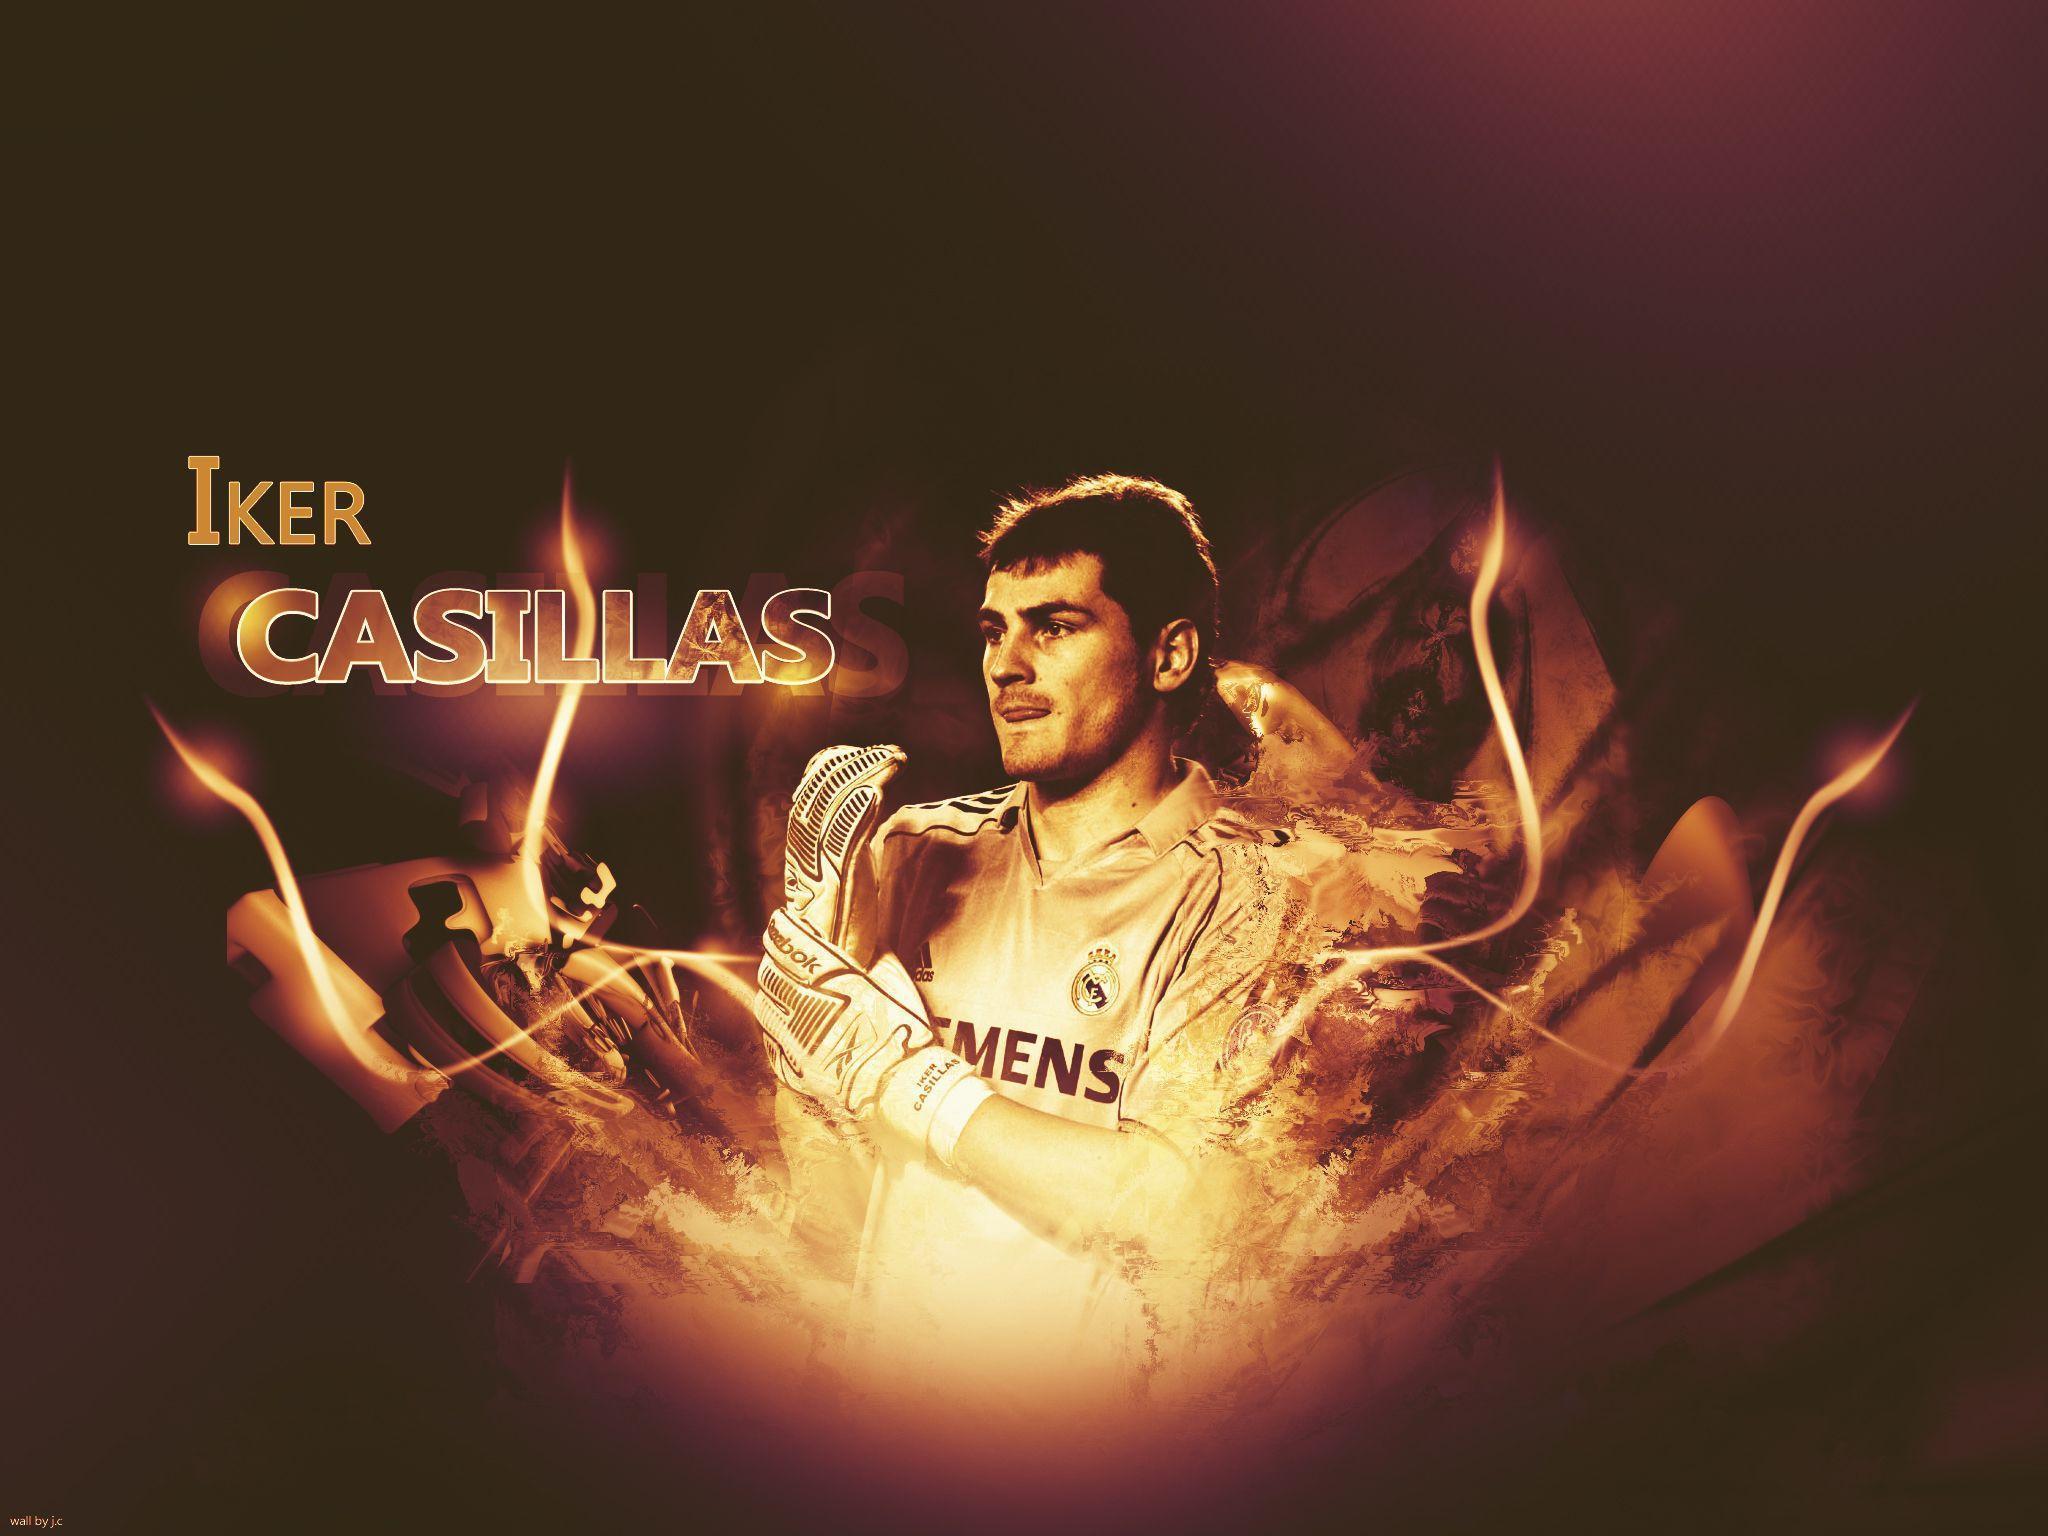 Iker Casillas Wallpaper Real Madrid. Wallpaper in Pixels